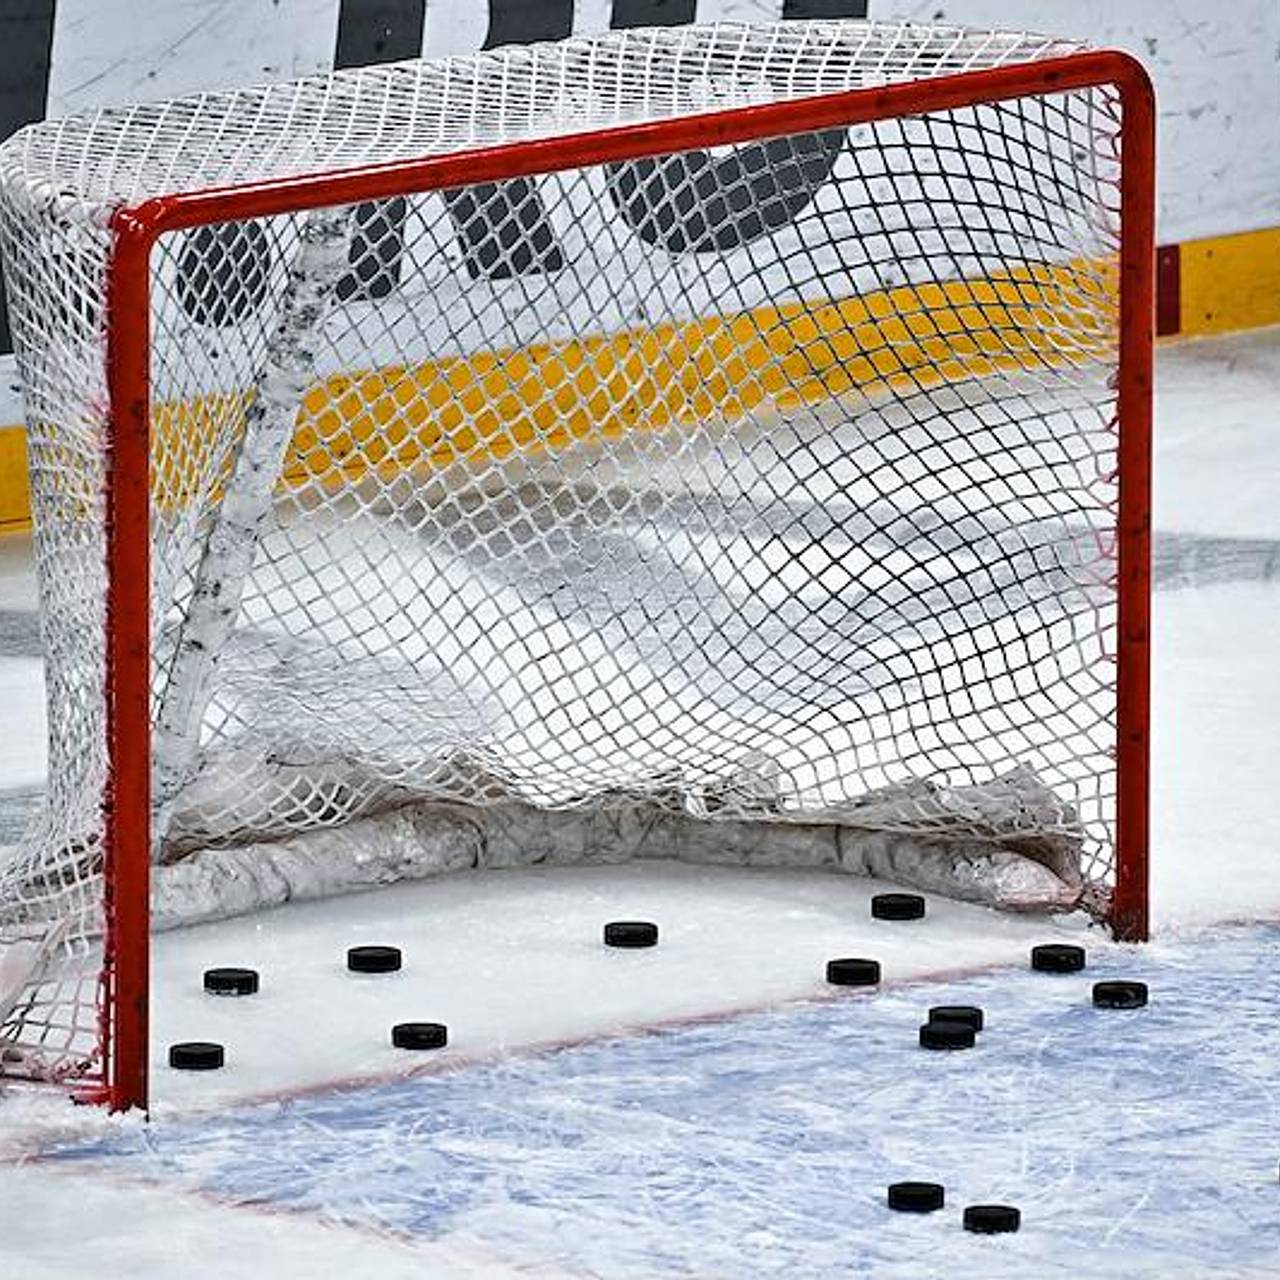 Локомотив» разгромил «Барыс» со счетом 6:0 в матче КХЛ | Хоккей